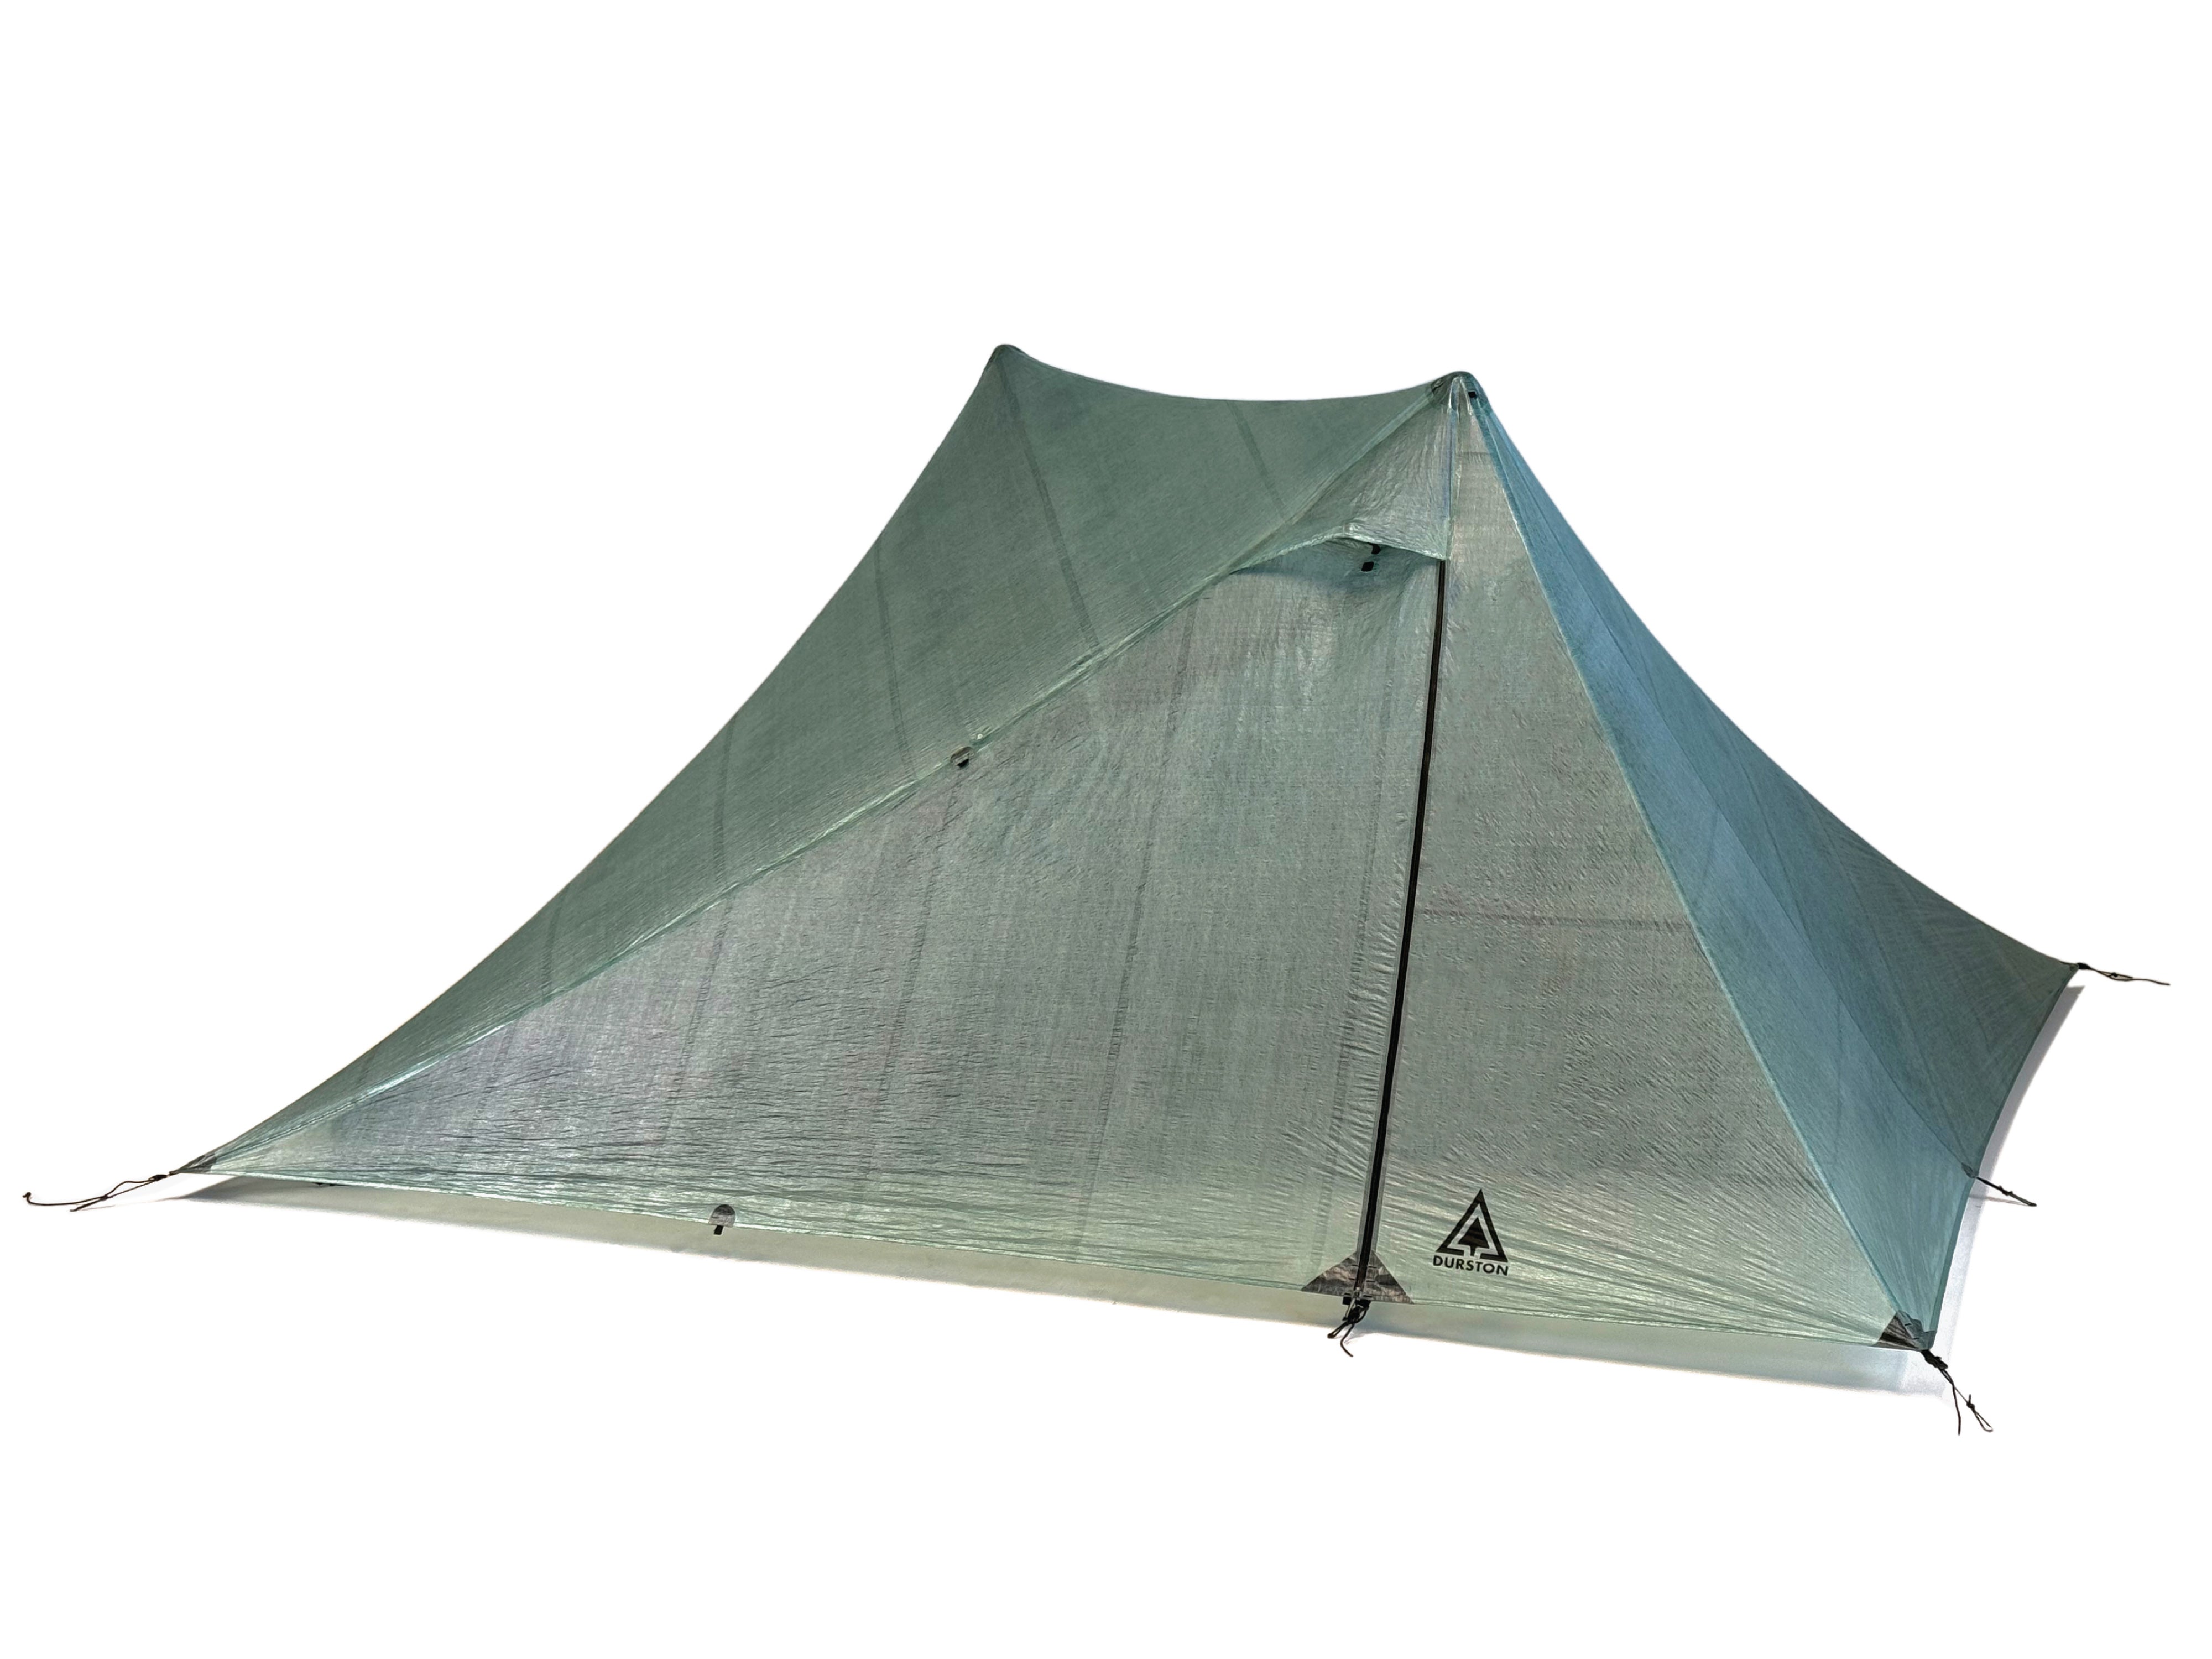 Durston | X-Mid Pro 2 Superlight Tent